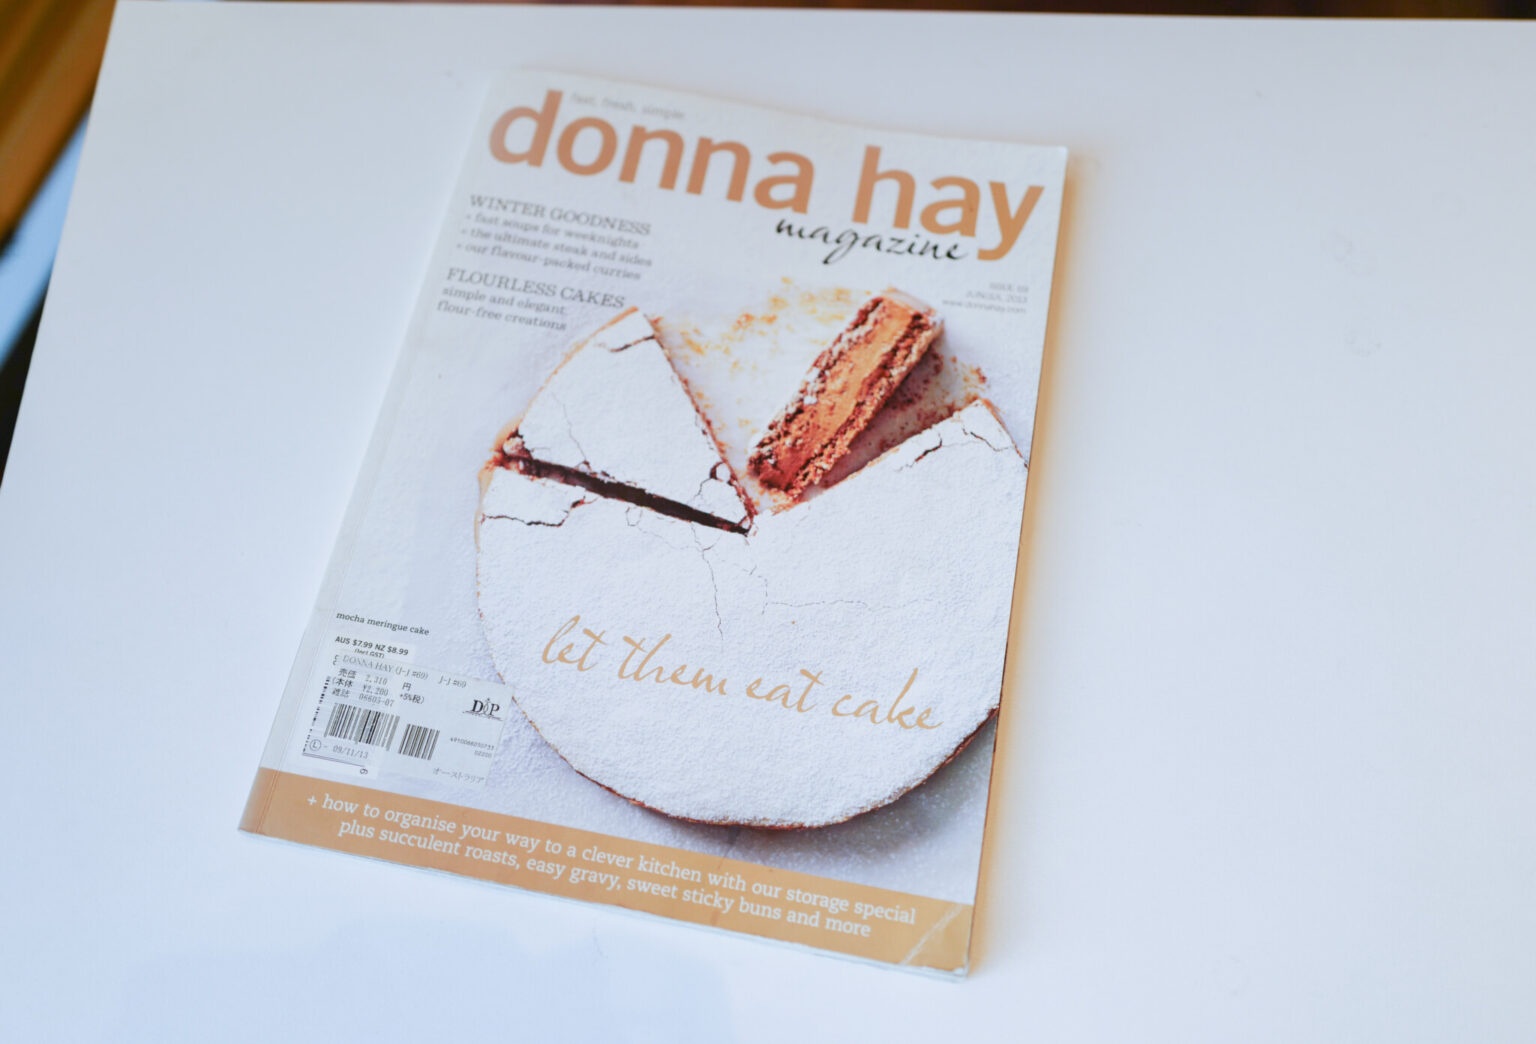 オーストラリアの有名なフードスタイリスト、donna  hayさんのお菓子の雑誌。お菓子本を作る際に参考にされたのだそう。